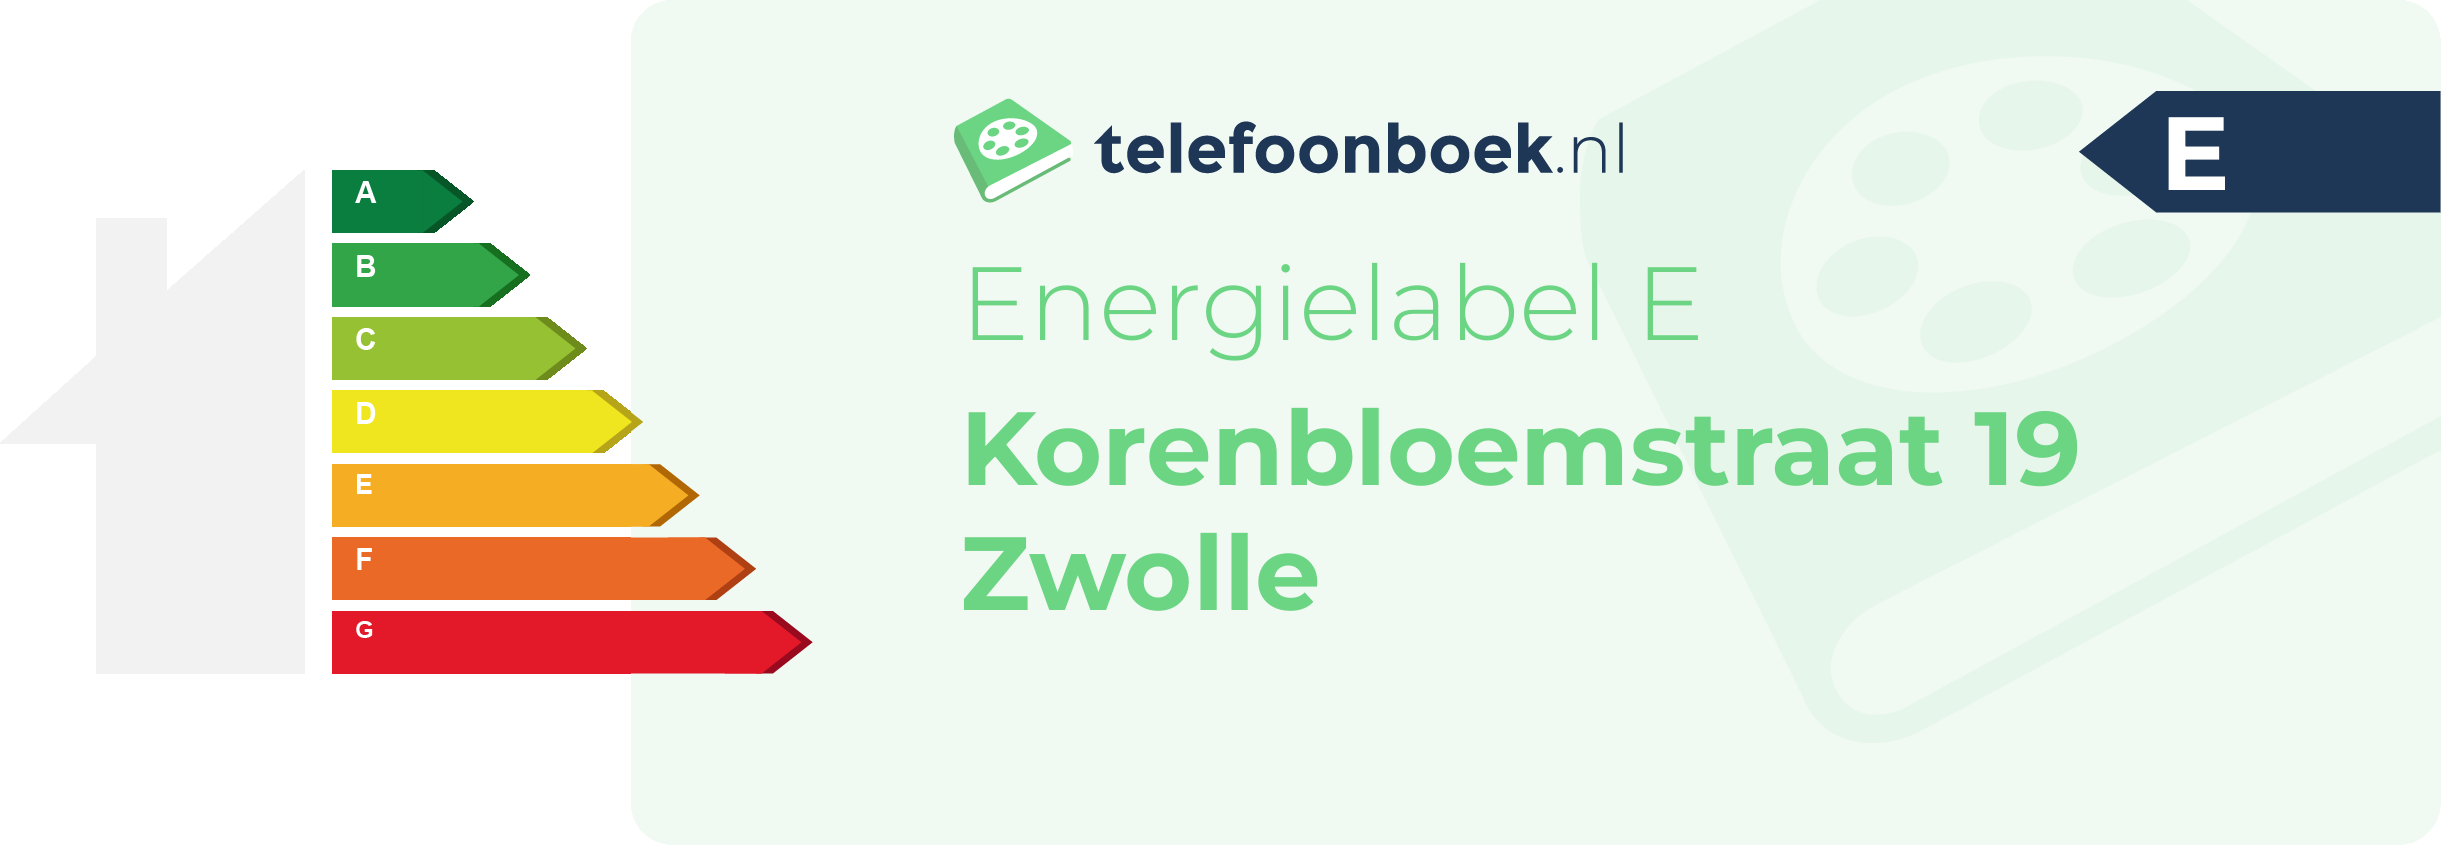 Energielabel Korenbloemstraat 19 Zwolle